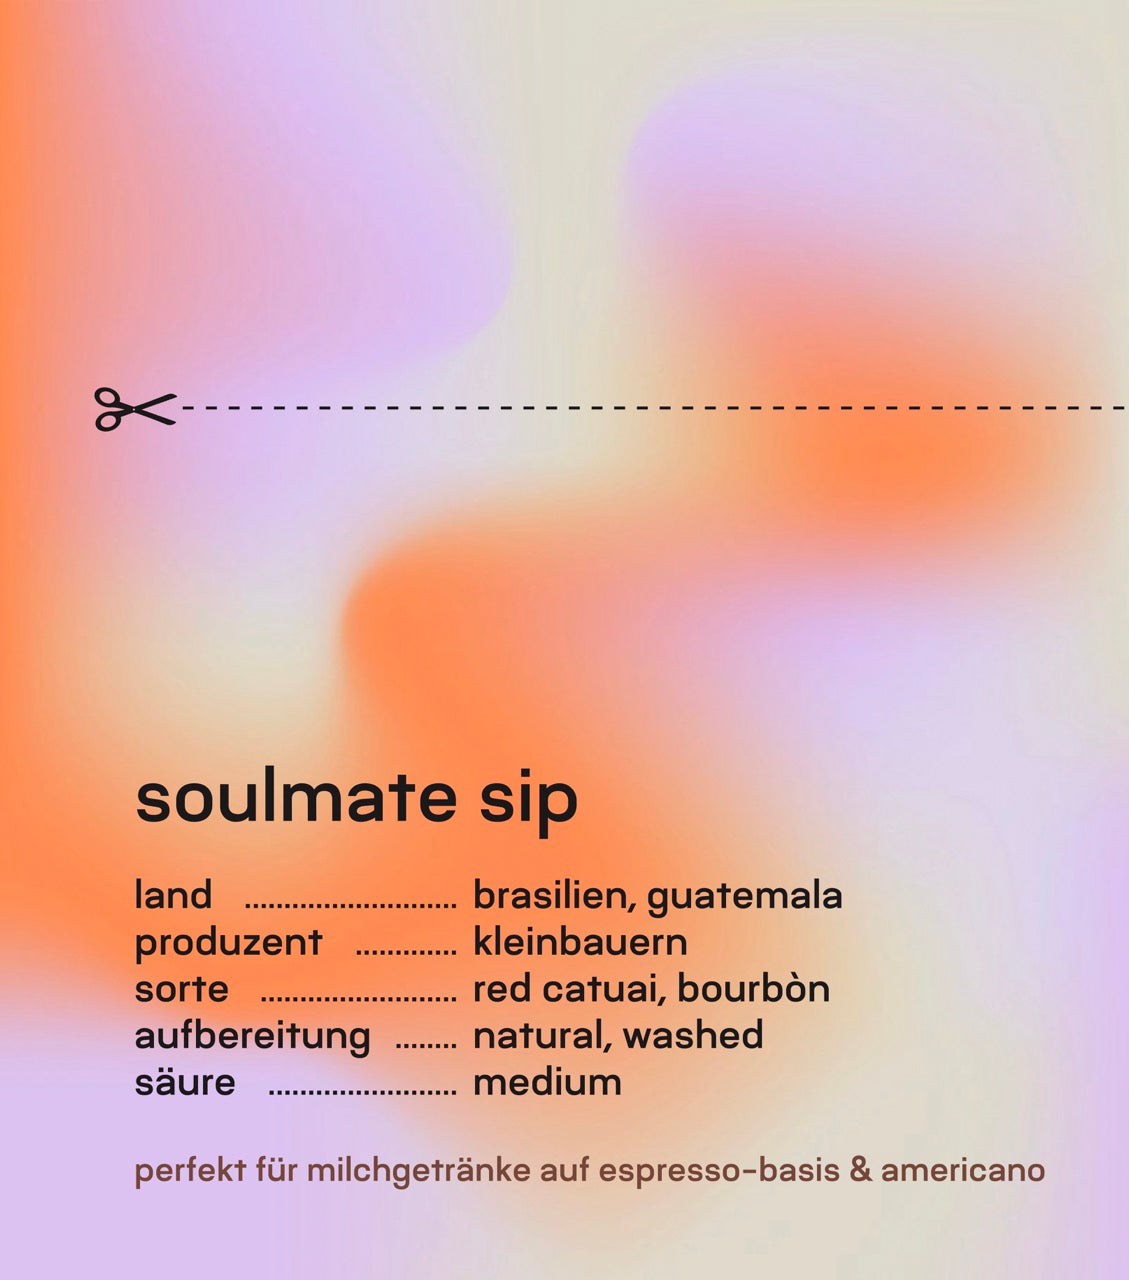 soulmate sip